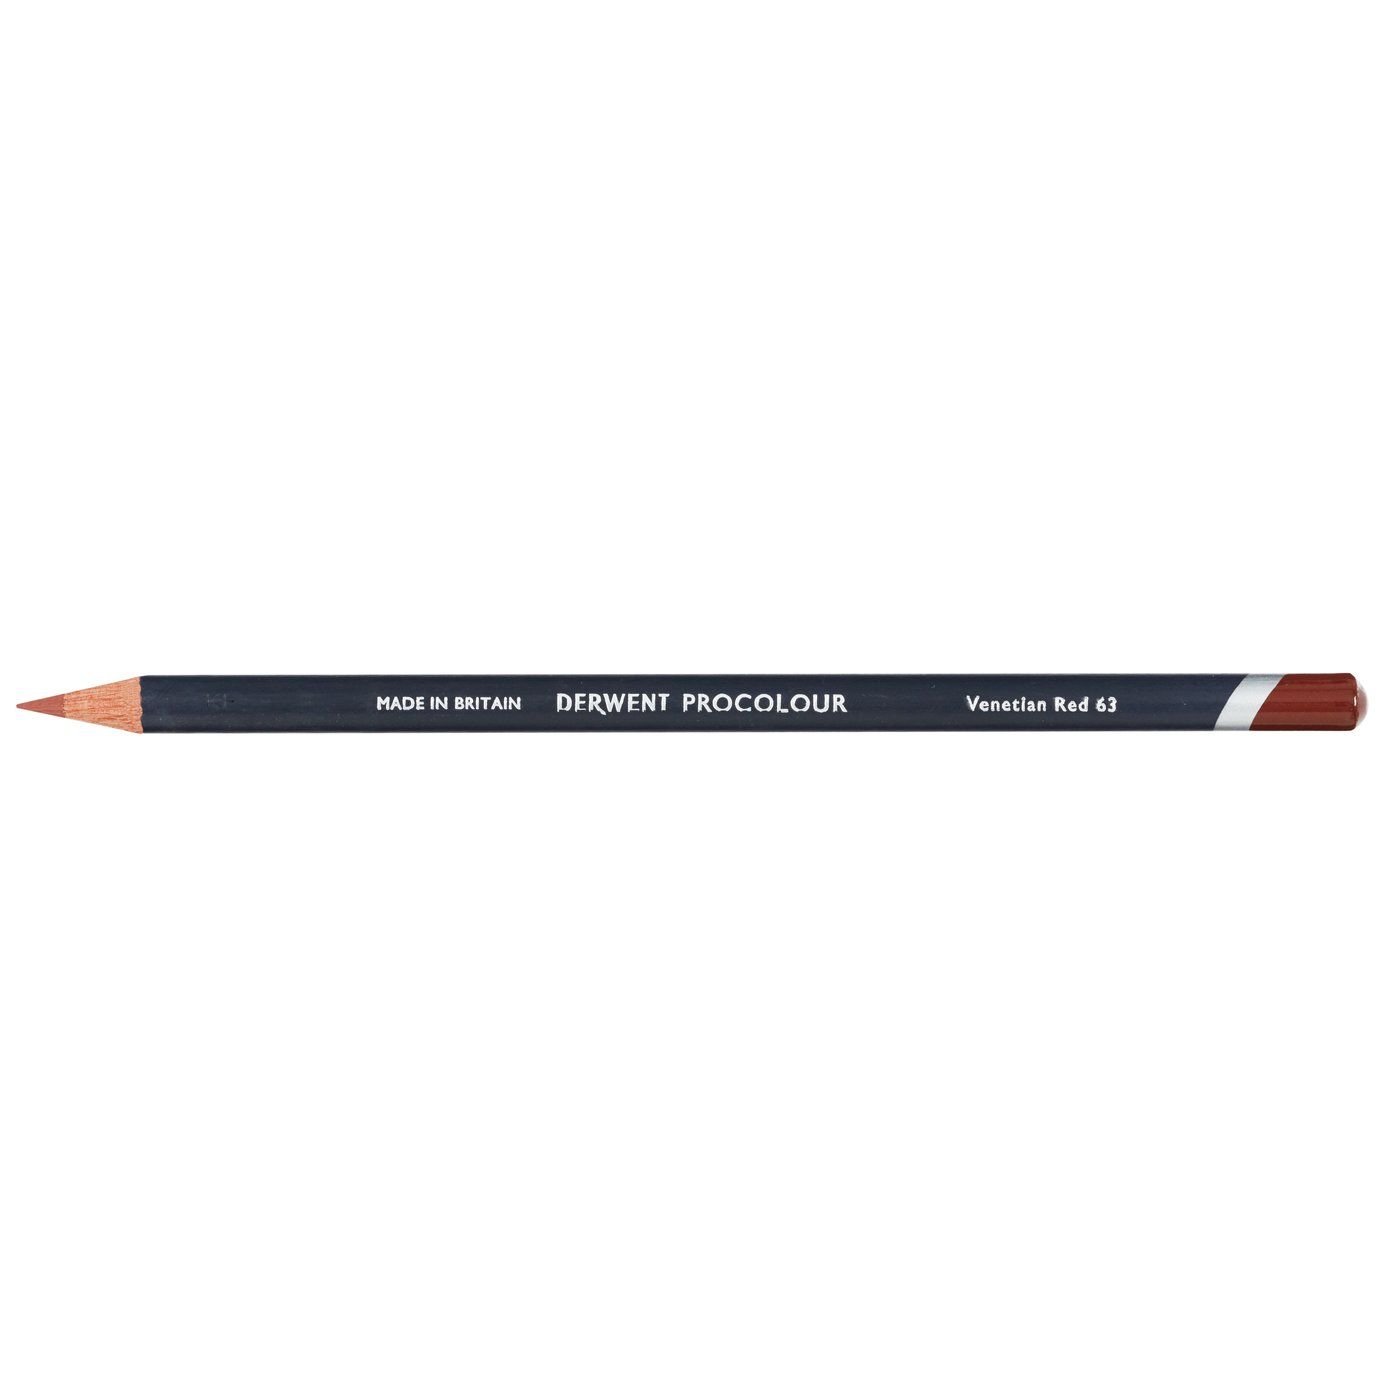 Derwent Procolour Pencil - 63 Venetian Red